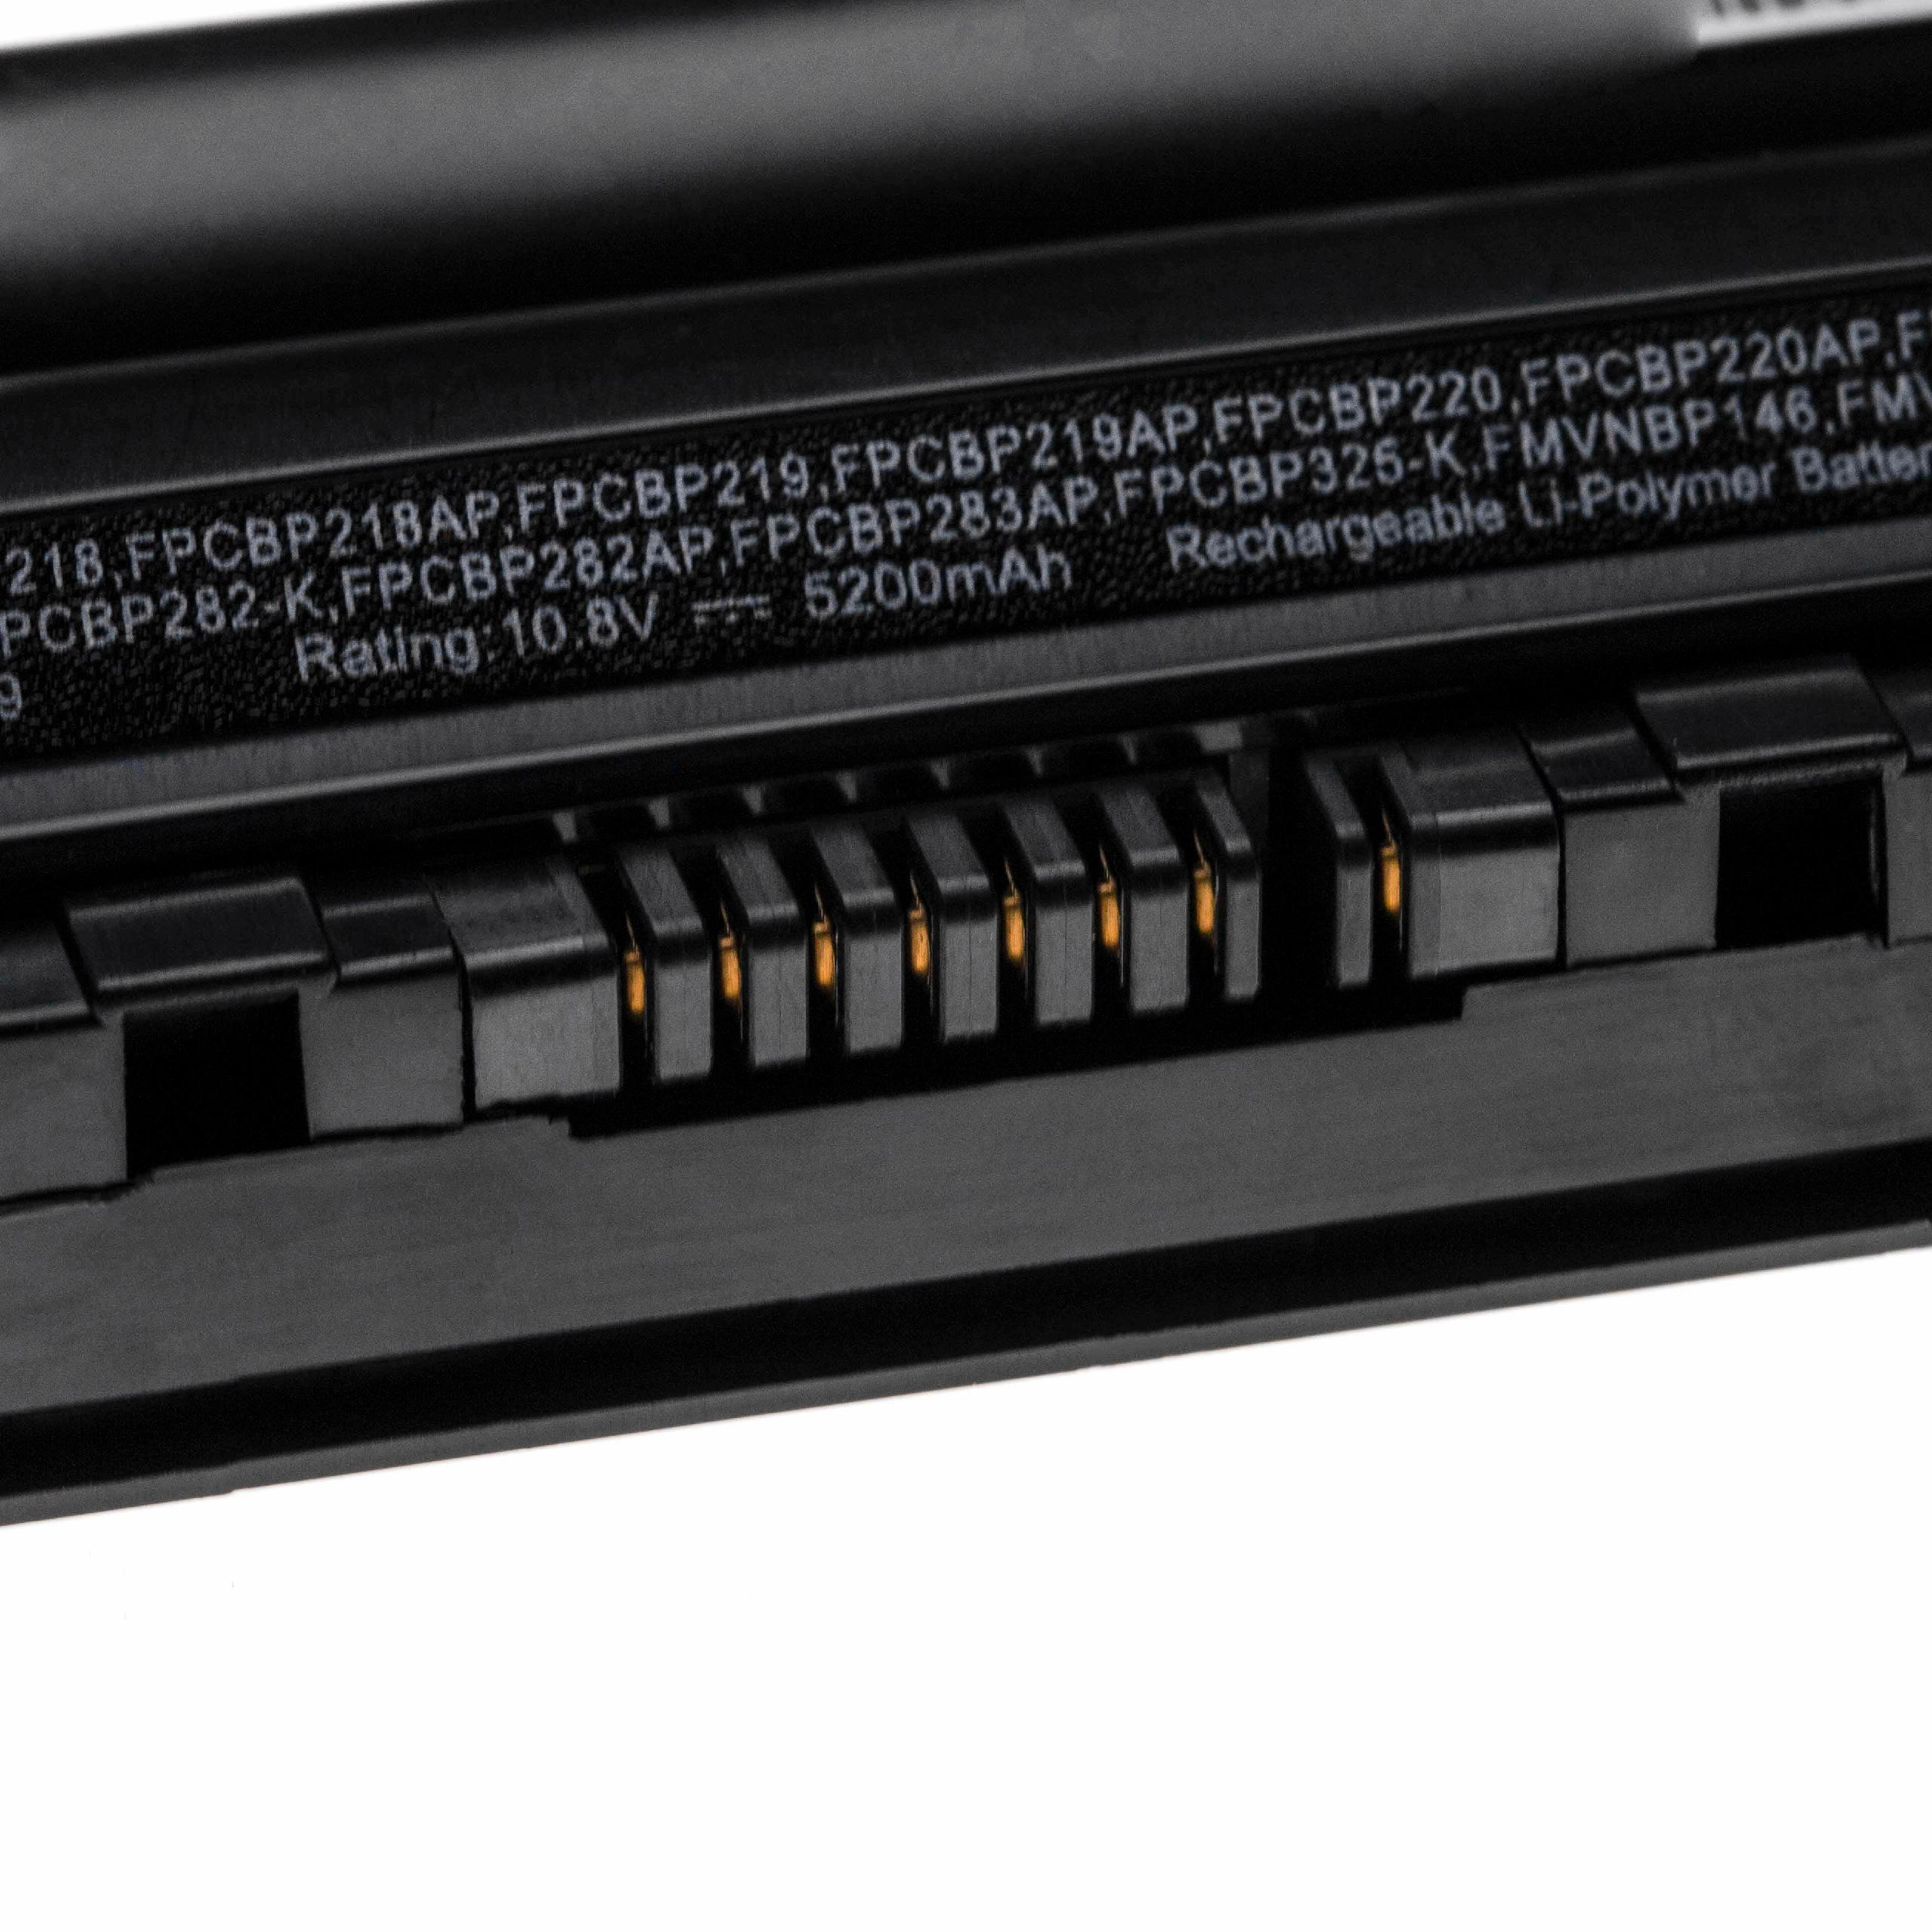 Batterie remplace Fujitsu cp293541-01, CP293550-01 pour ordinateur portable - 5200mAh 10,8V Li-polymère, noir